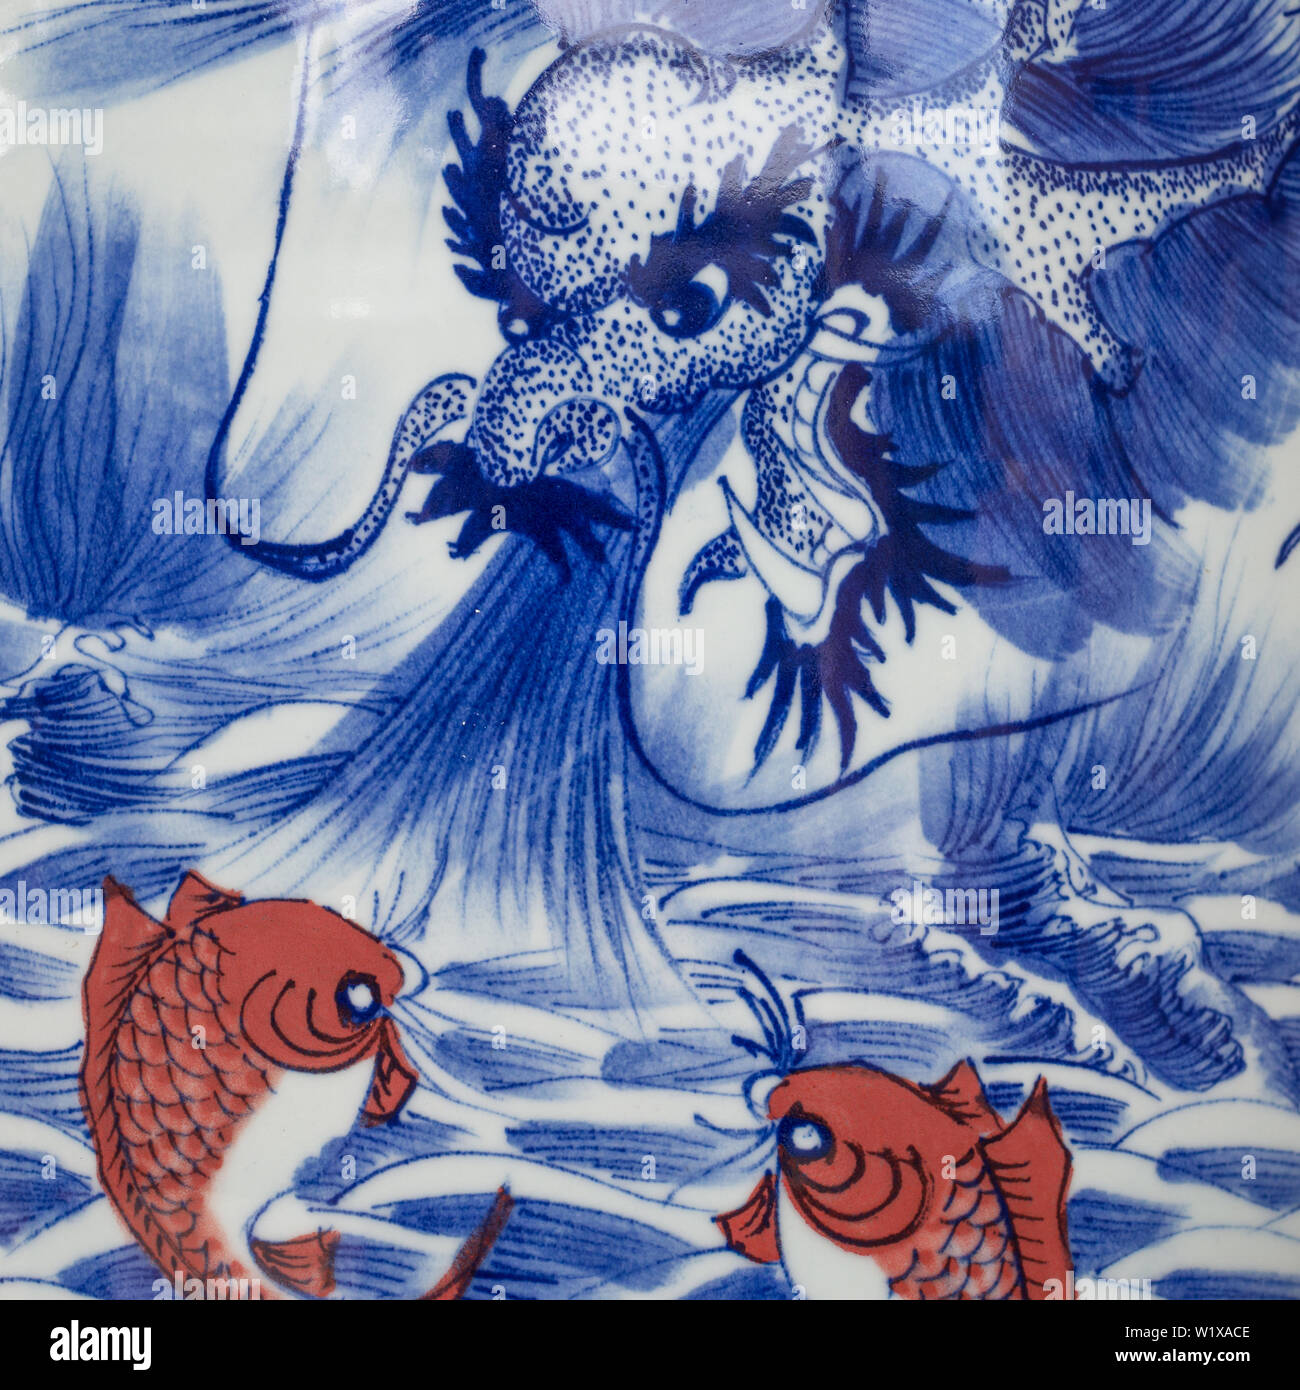 Azul y blanco urn o jarrón de cerámica china la representación artística de un dragón y dos peces koi instagram en una plaza cerca de la imagen Foto de stock